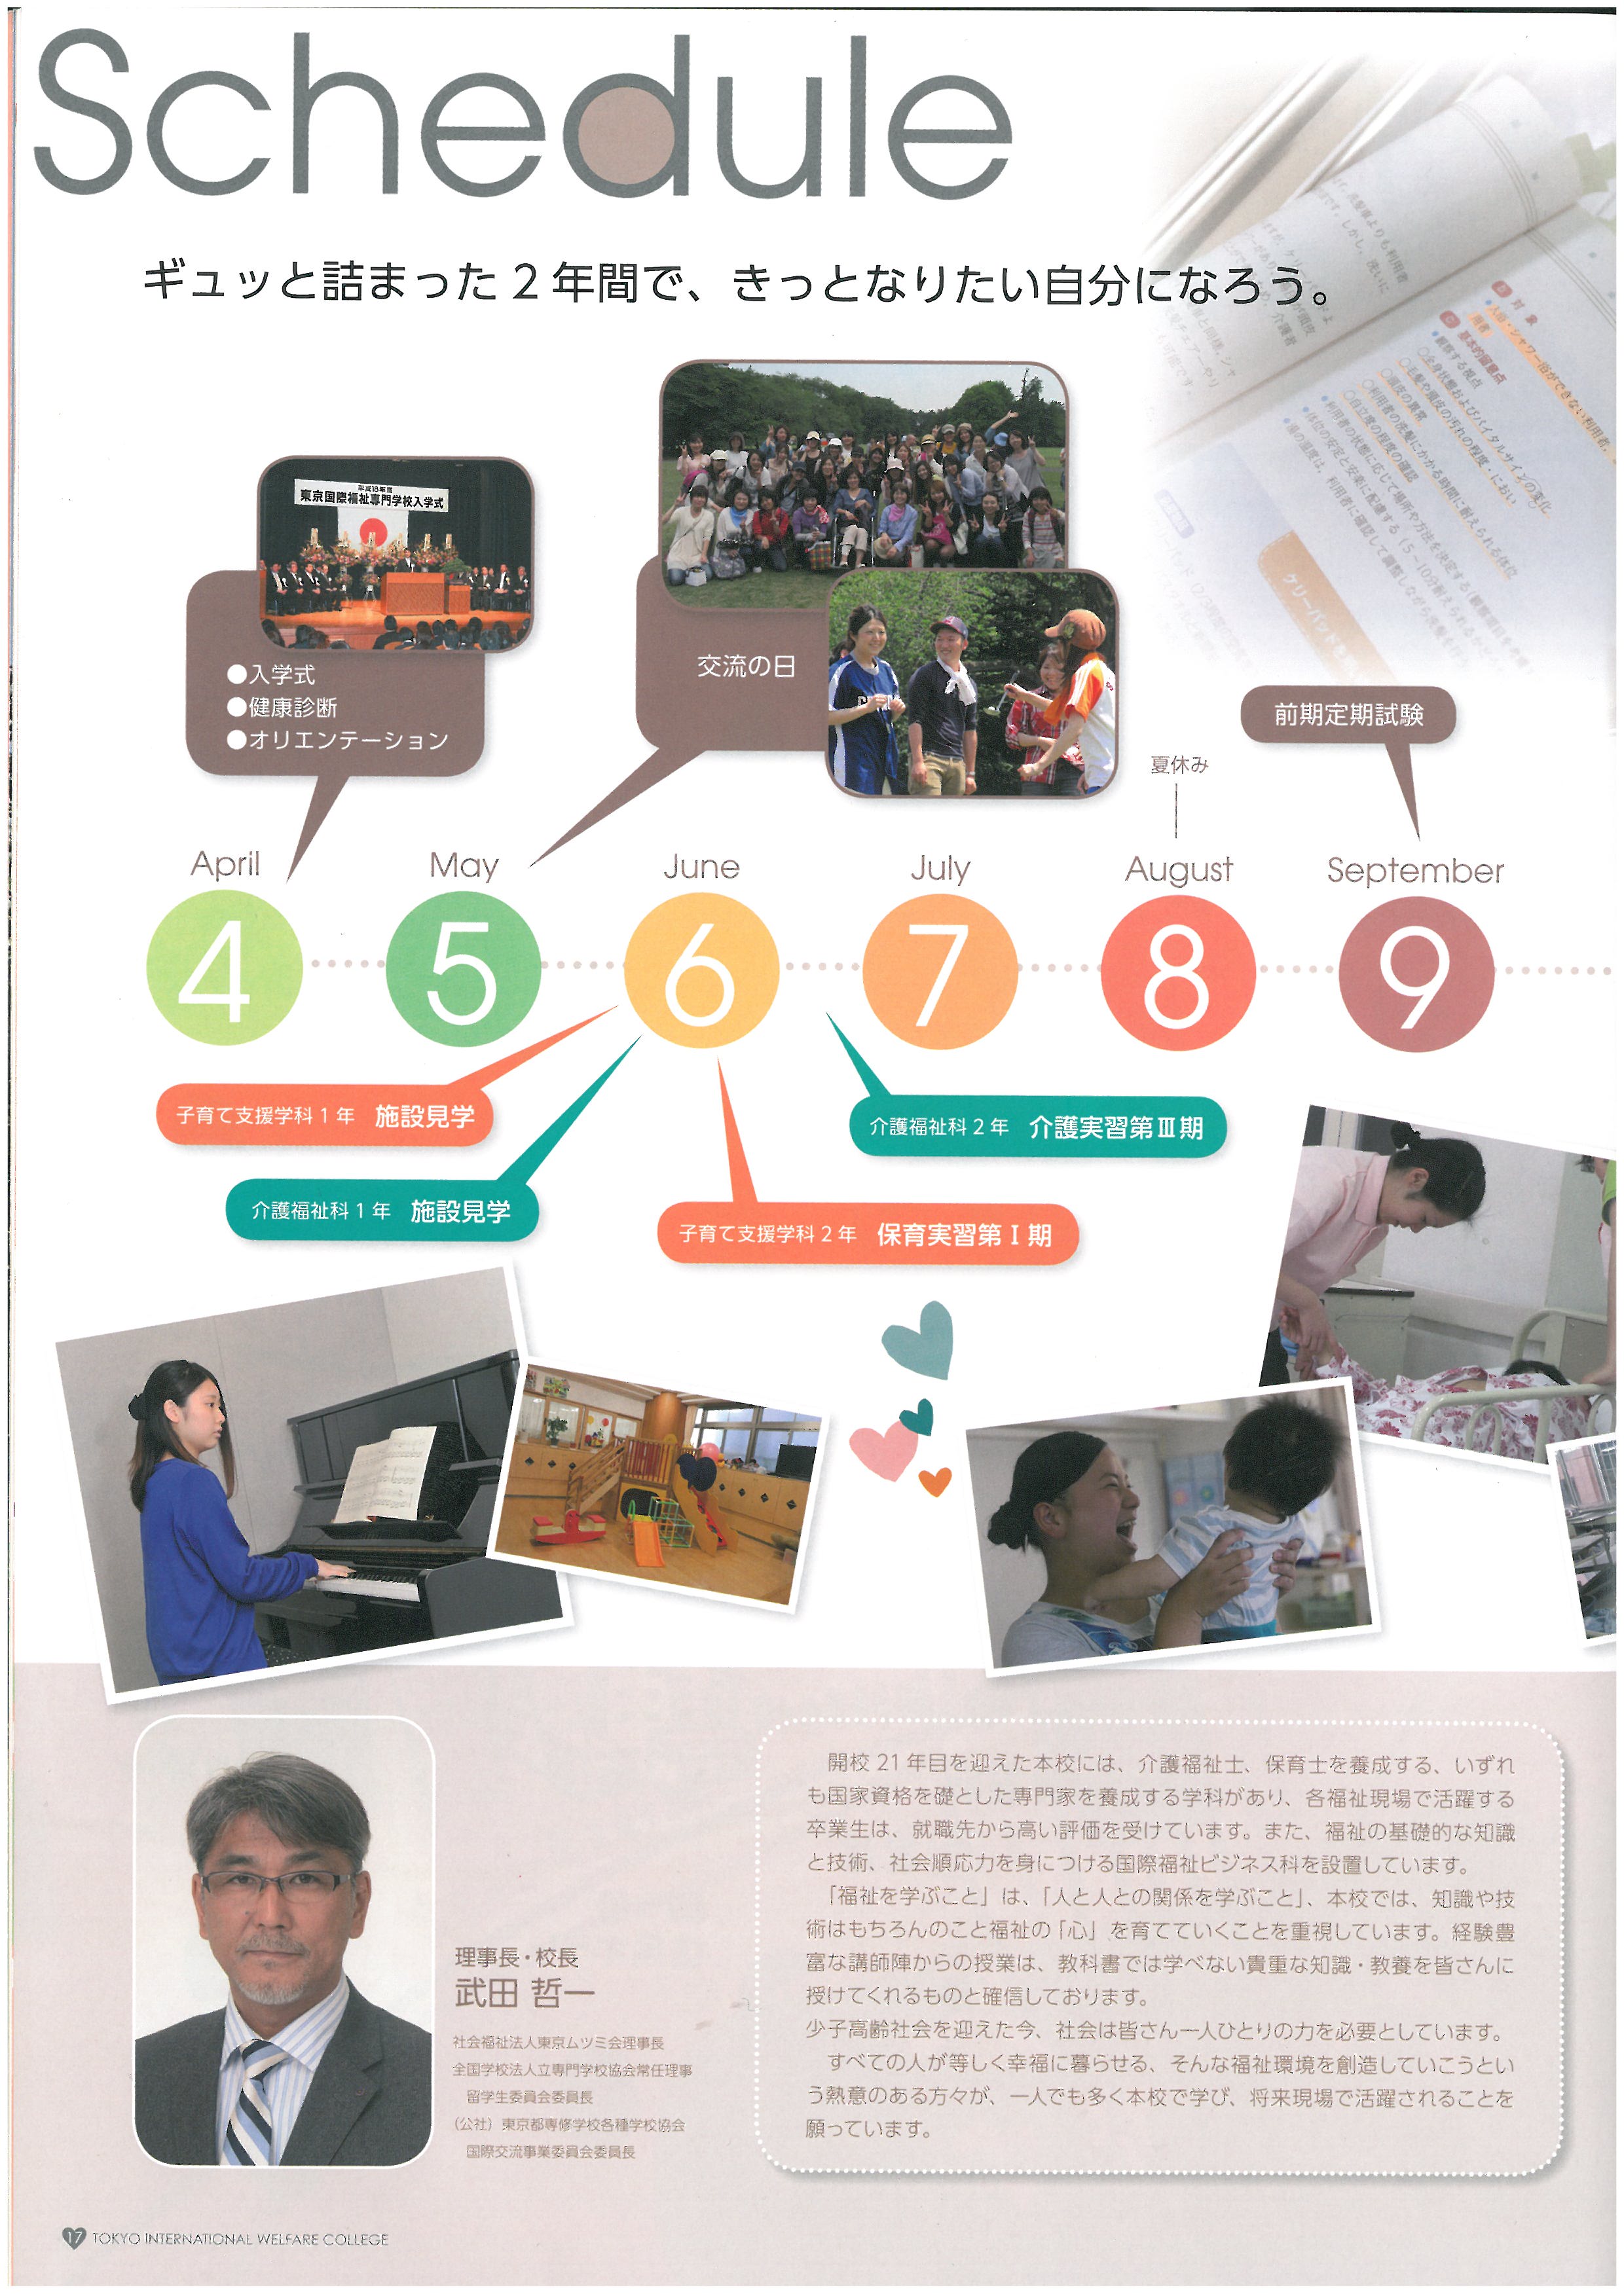 도쿄 국제복지전문학교 홍보 팜플렛 18.jpg